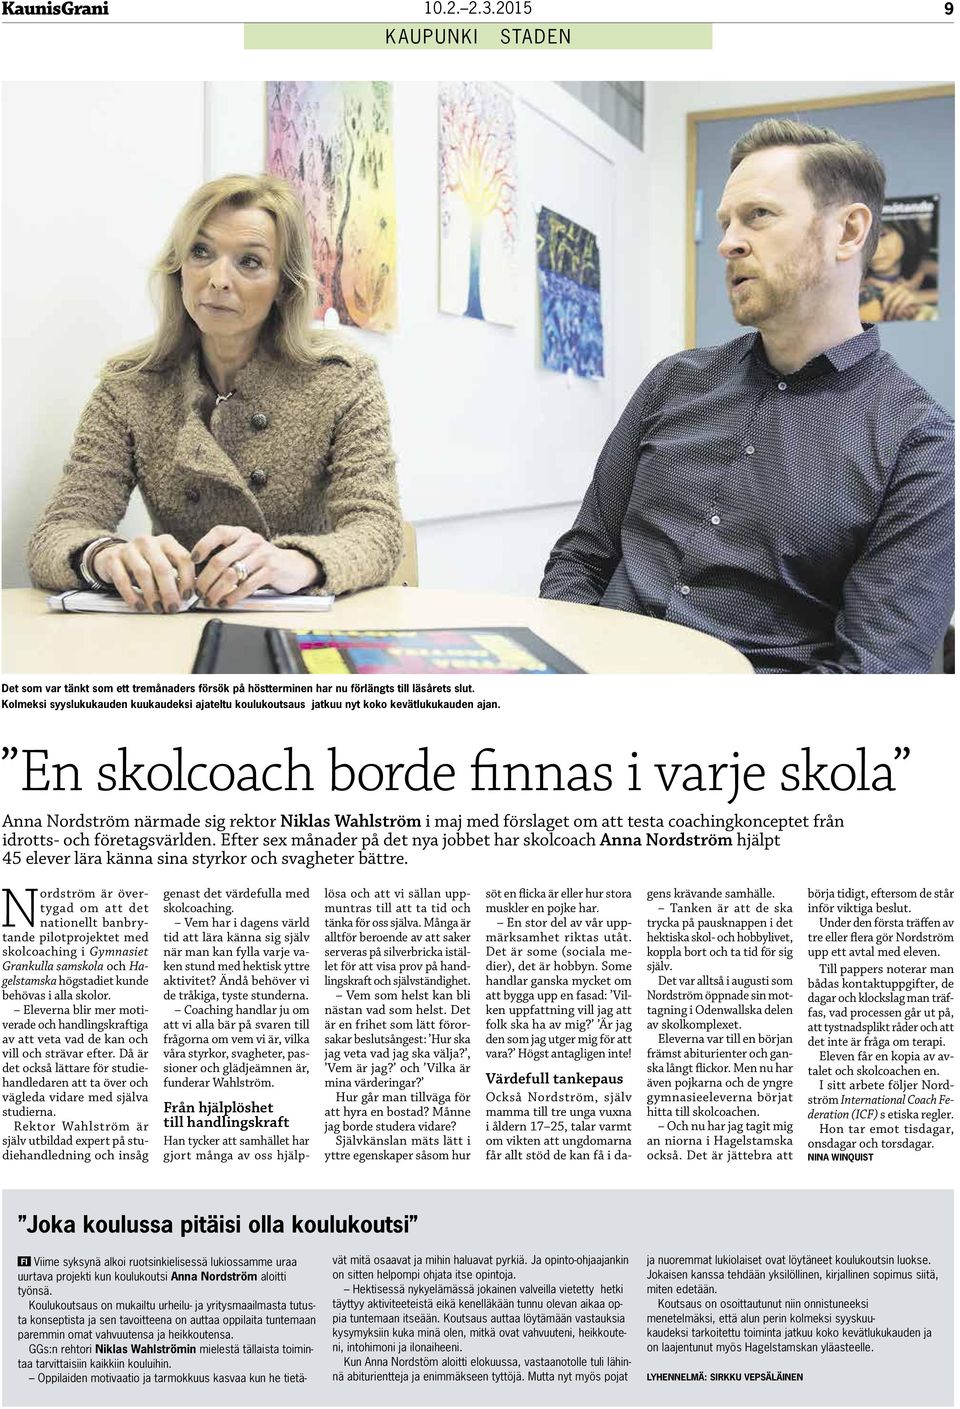 En skolcoach borde finnas i varje skola Anna Nordström närmade sig rektor Niklas Wahlström i maj med förslaget om att testa coachingkonceptet från idrotts- och företagsvärlden.